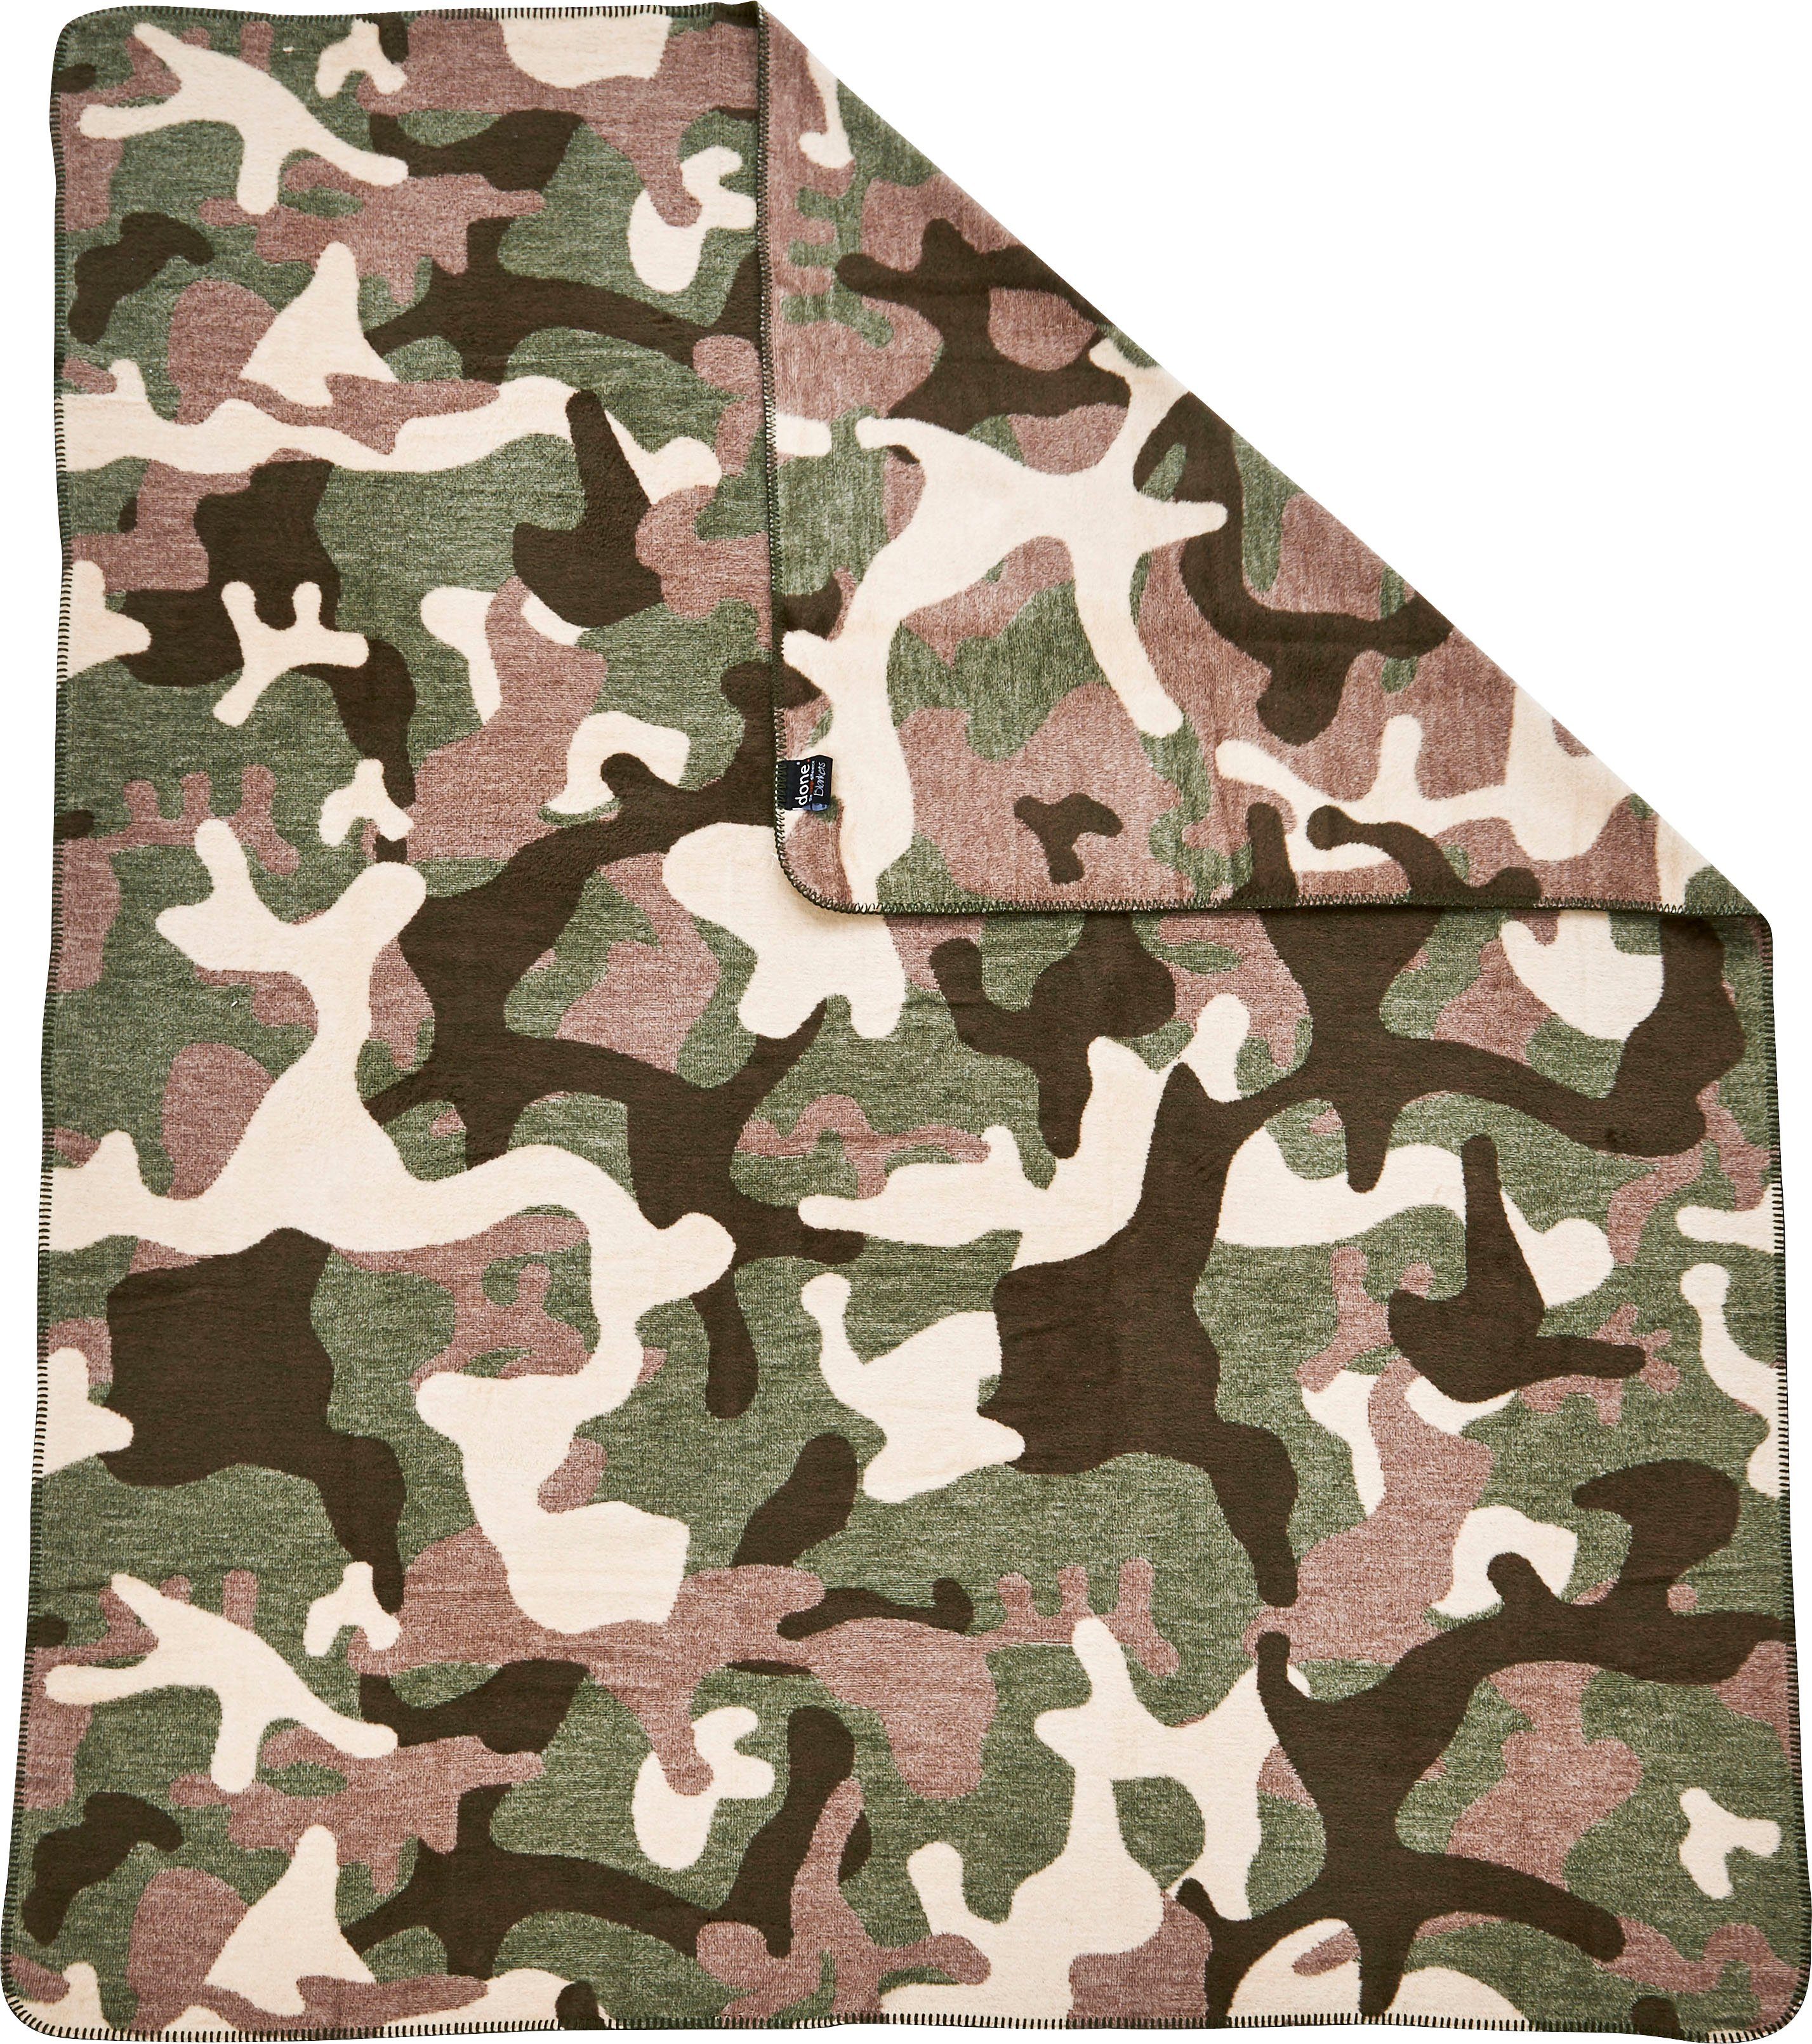 mit Ziernaht, Camouflage, einfassender Wohndecke done.®, Wohndecke Kuscheldecke braun/grün/beige